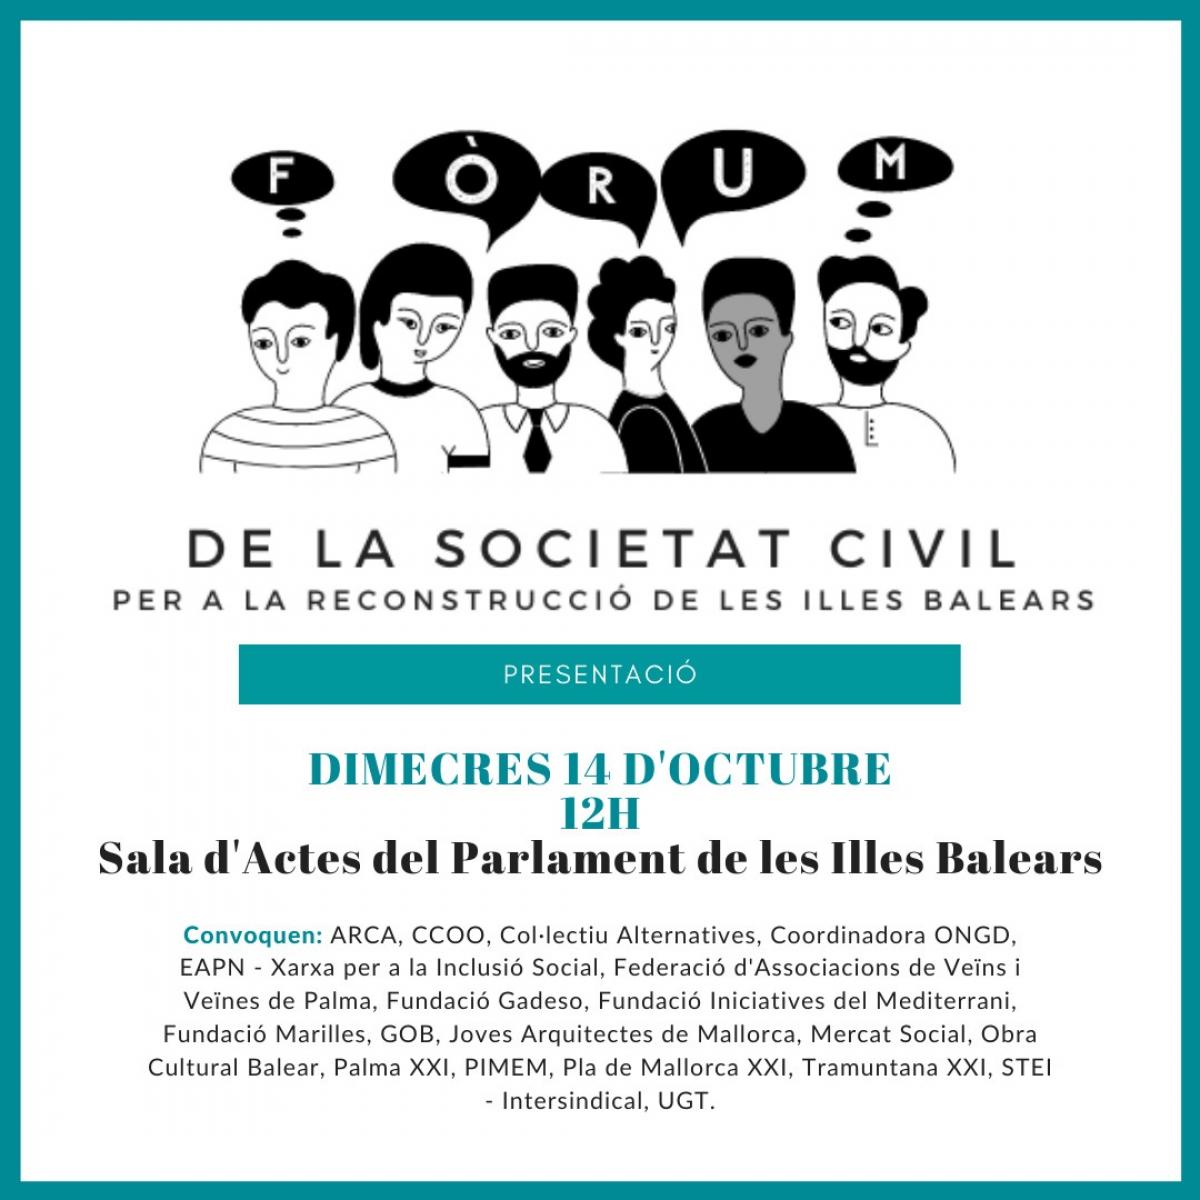 Frum de la Societat Civil per a la Reconstrucci de les Illes Balears